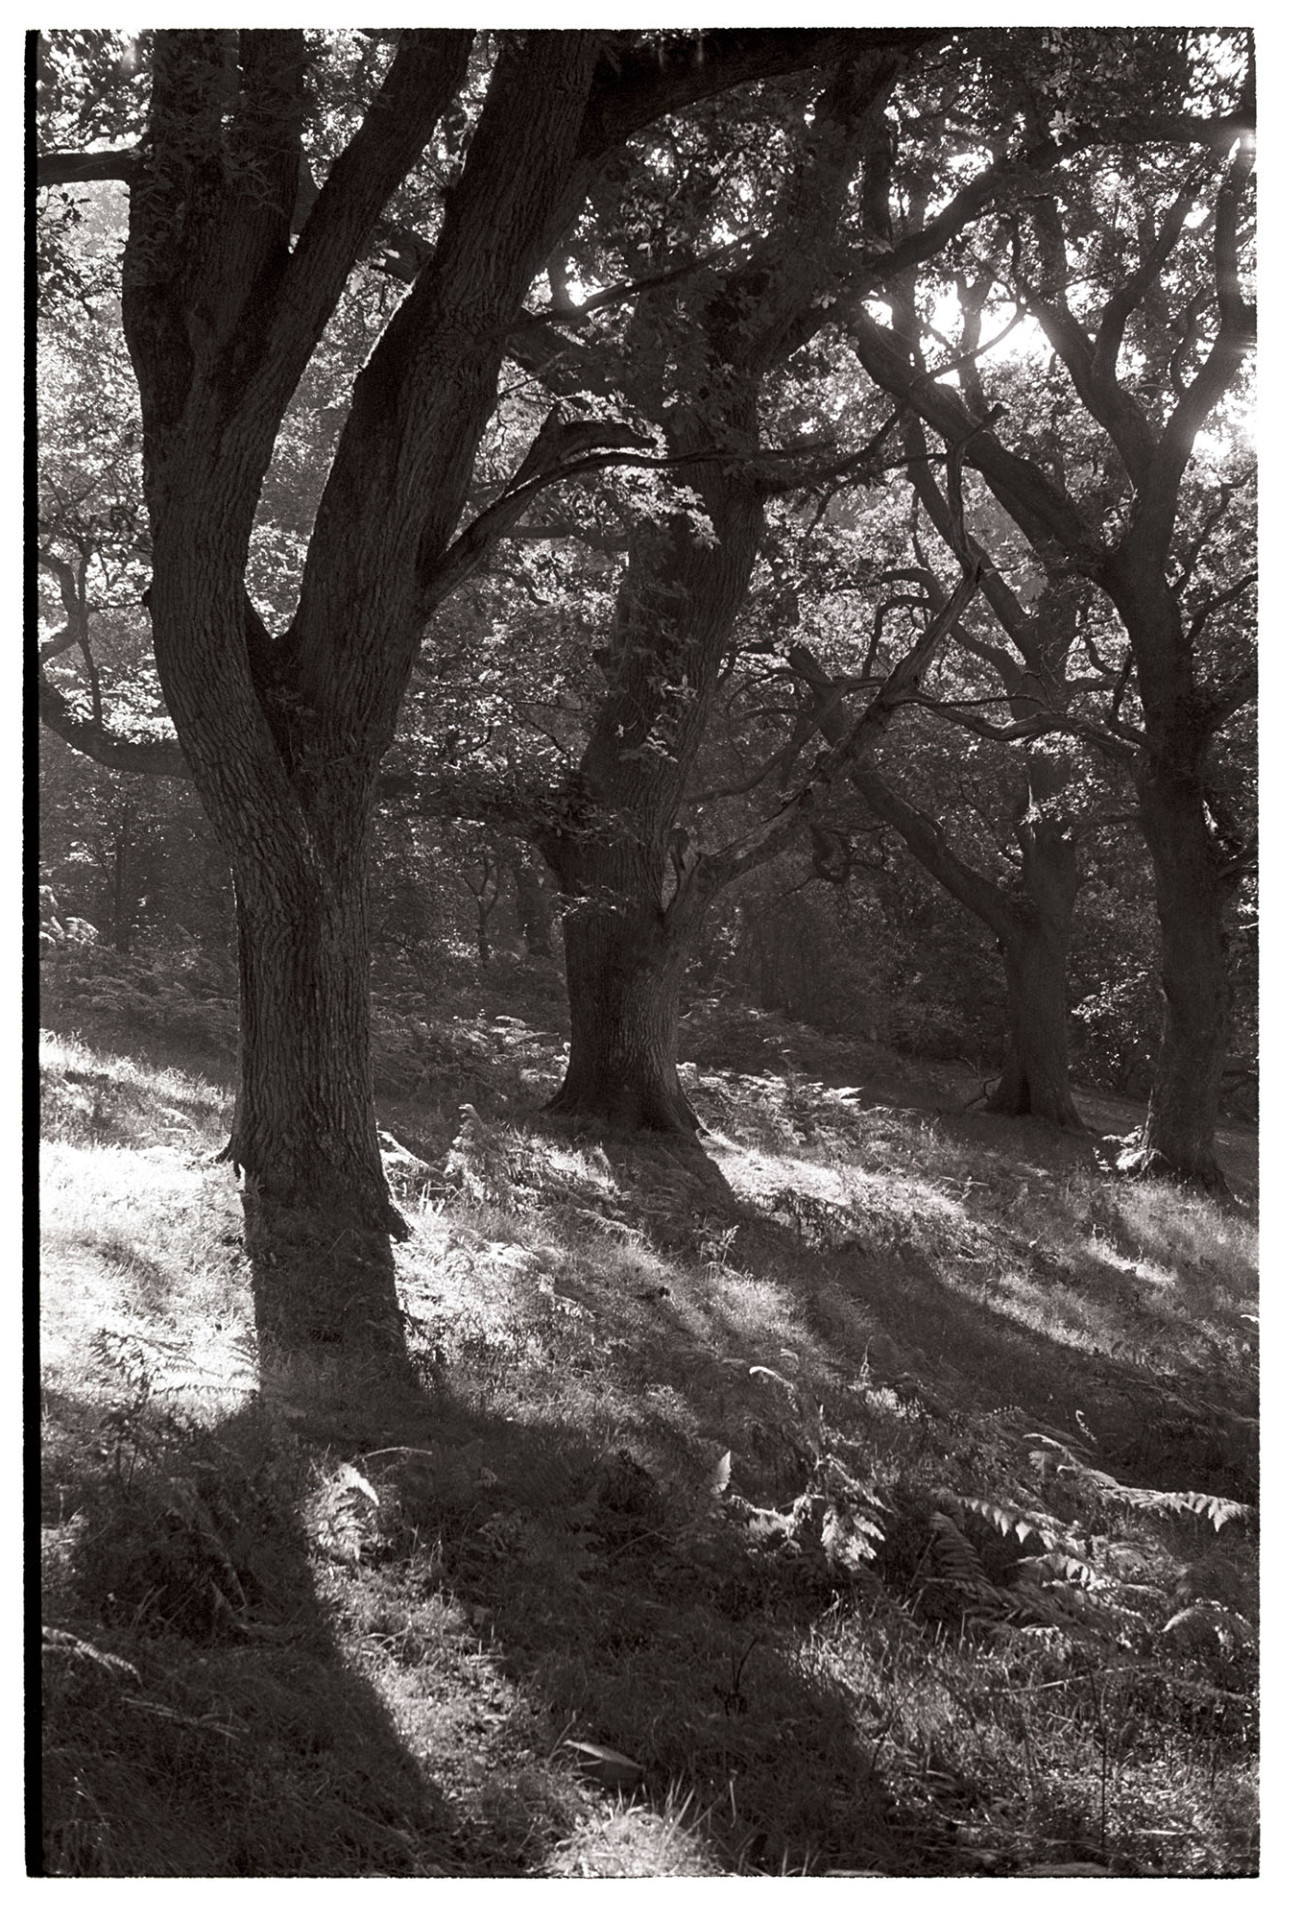 Oak wood, castle deer forest sunlight. 
[Sunlit oak woodland at Okehampton Castle deer forest.]